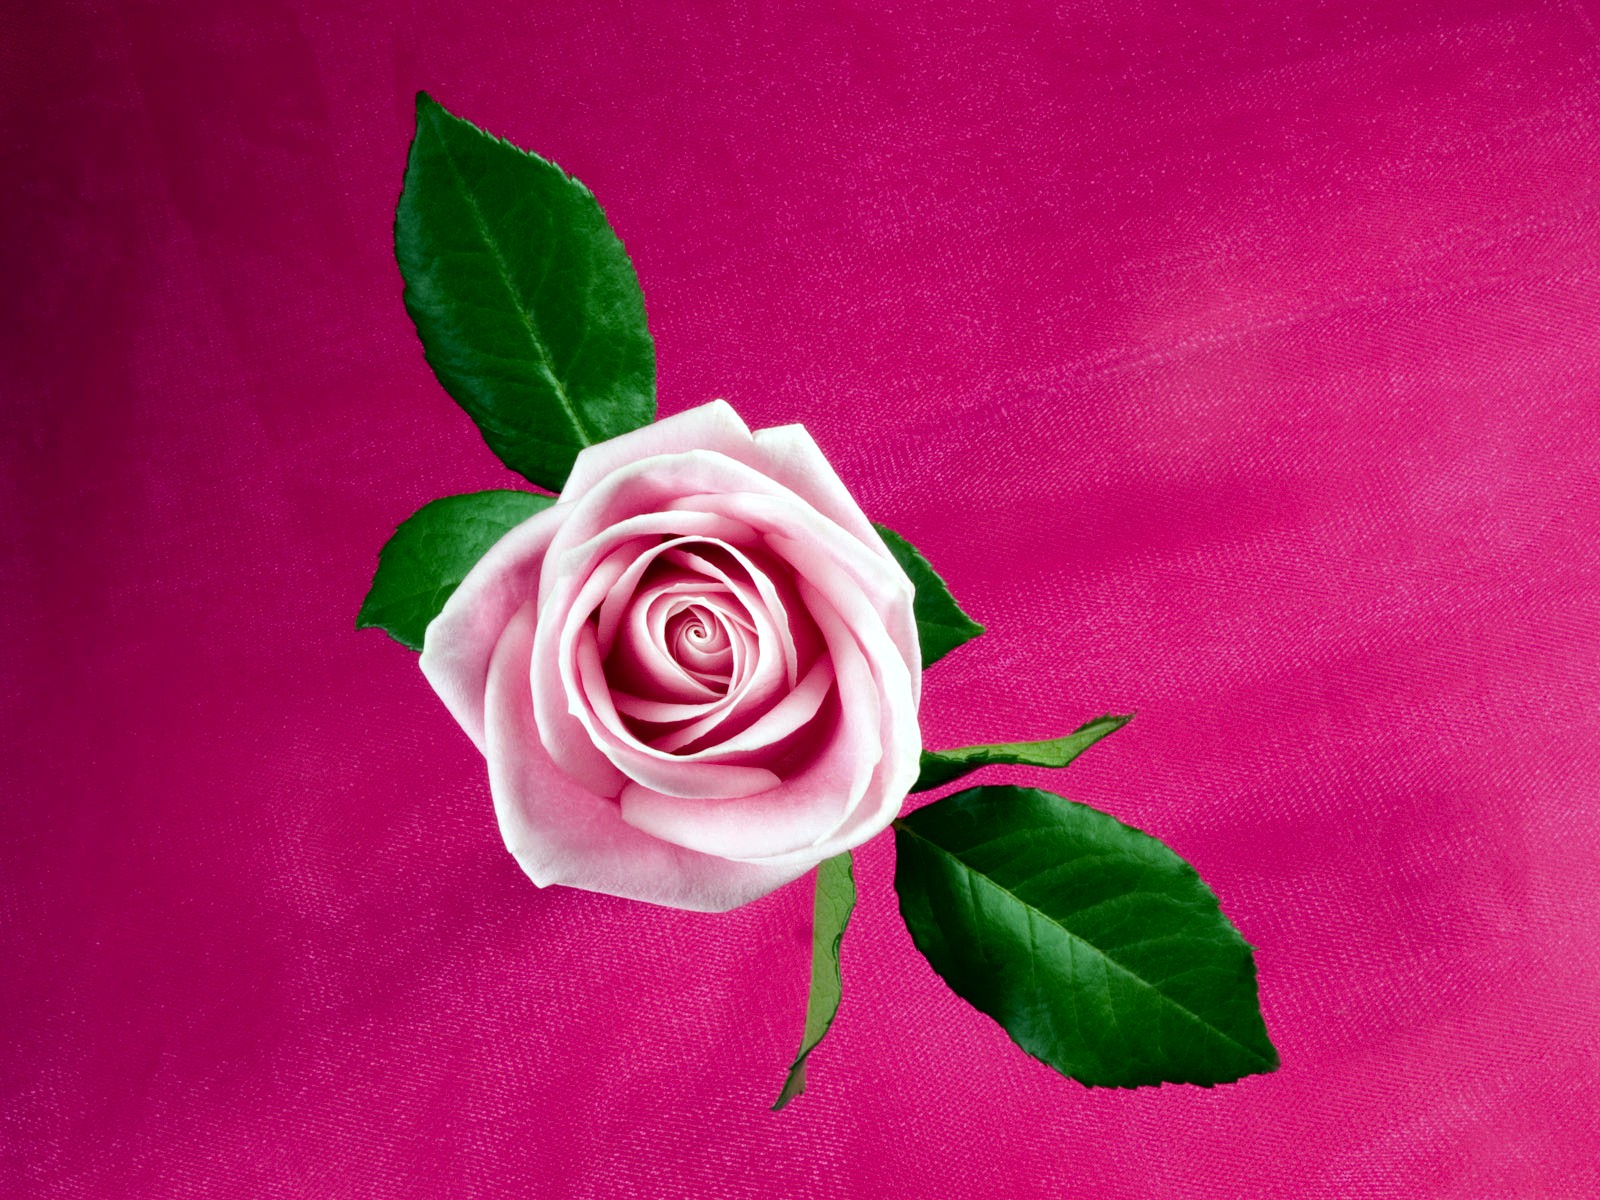 Cool Pink Rose9524519990 - Cool Pink Rose - Spring, Rose, Pink, Cool